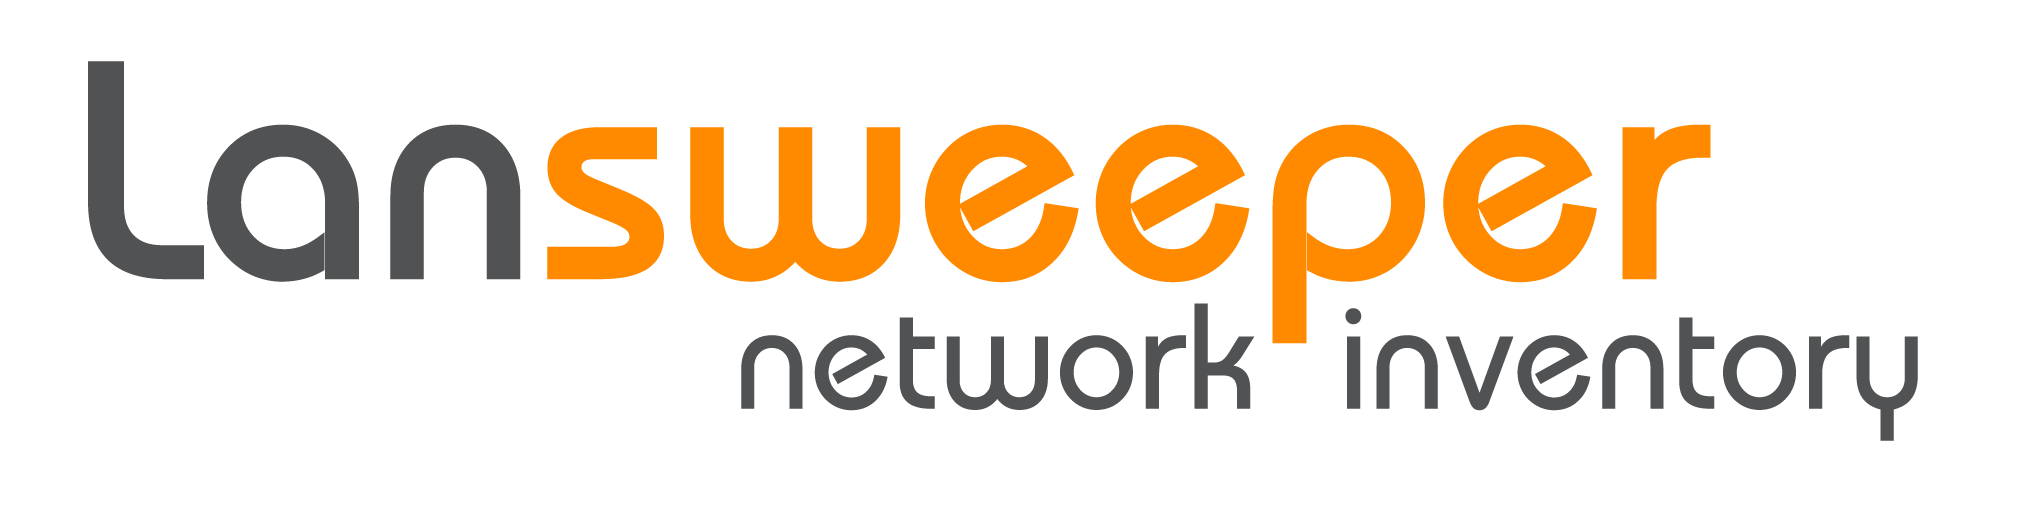 LanSweeper logo